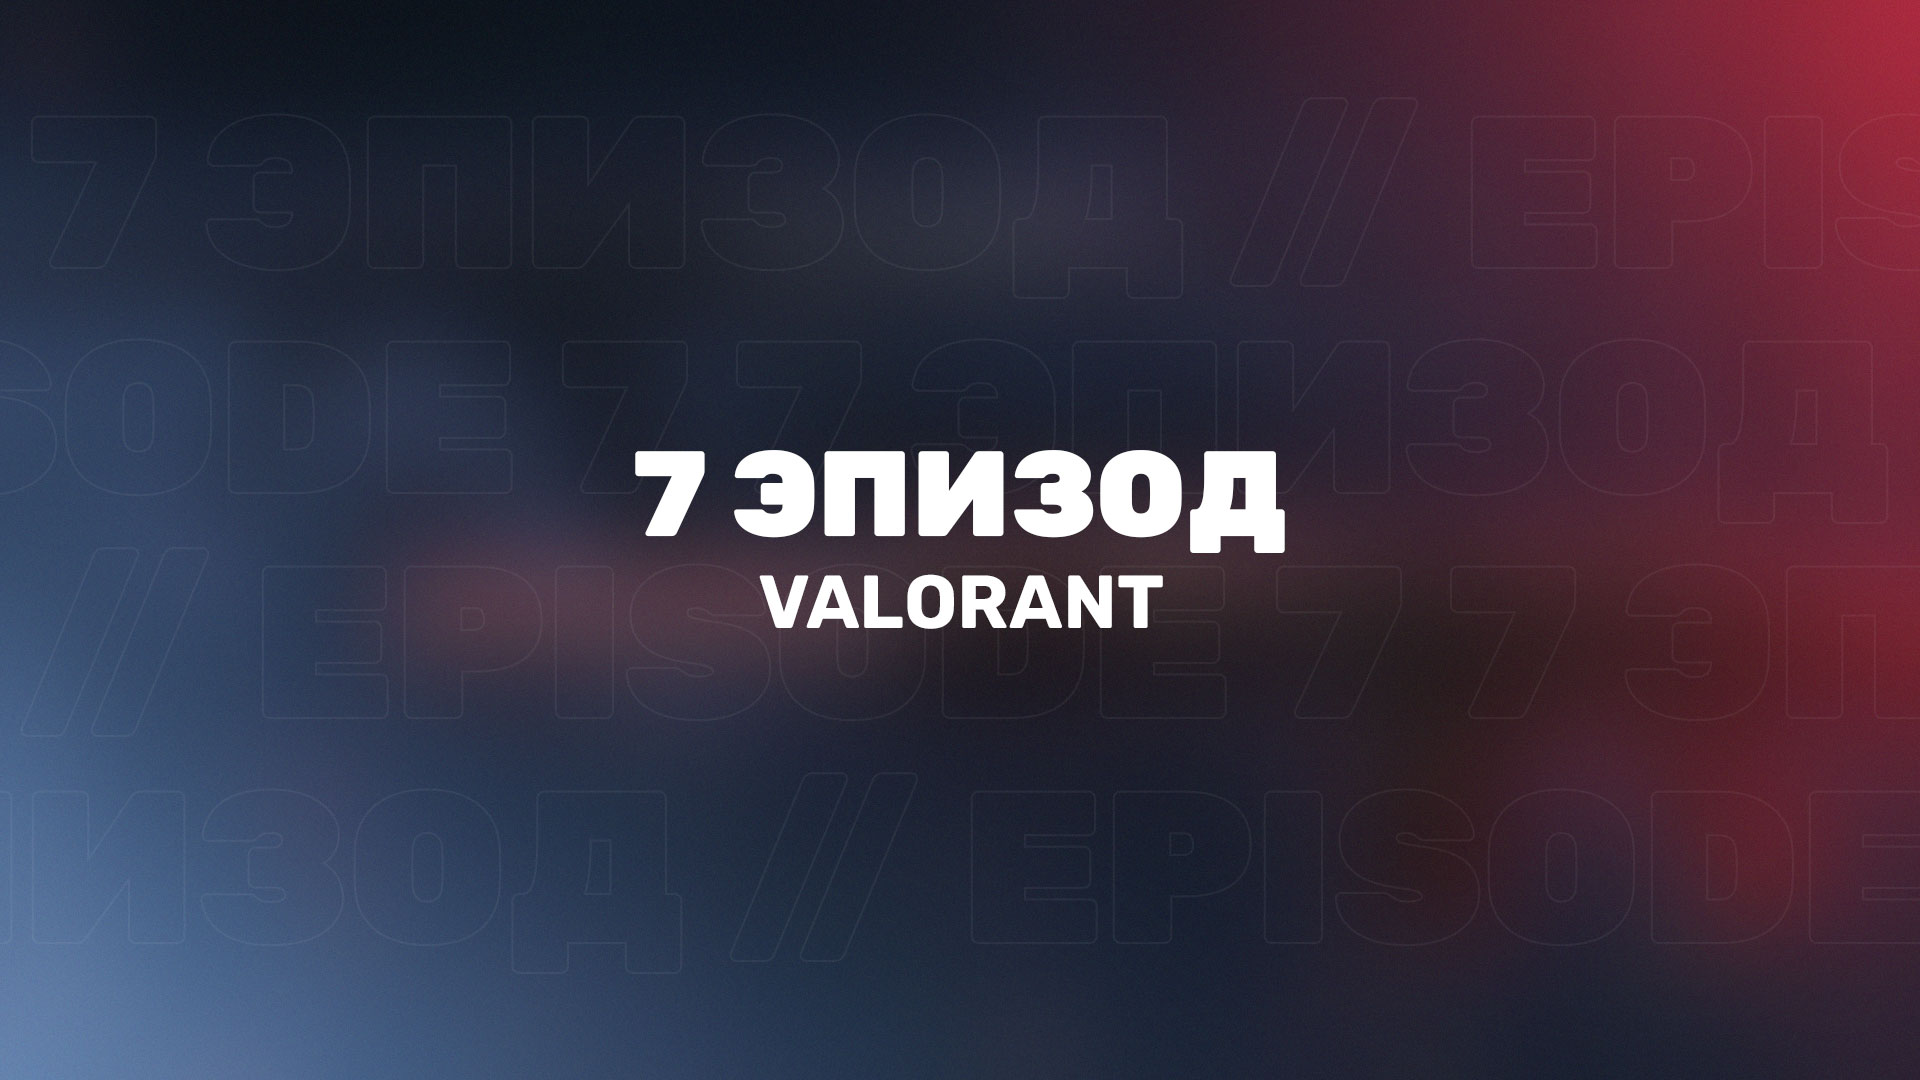 В Valorant стартует 7 эпизод с новой валютой Kingdom Credits, новым магазином аксессуаров и прочими нововведениями.